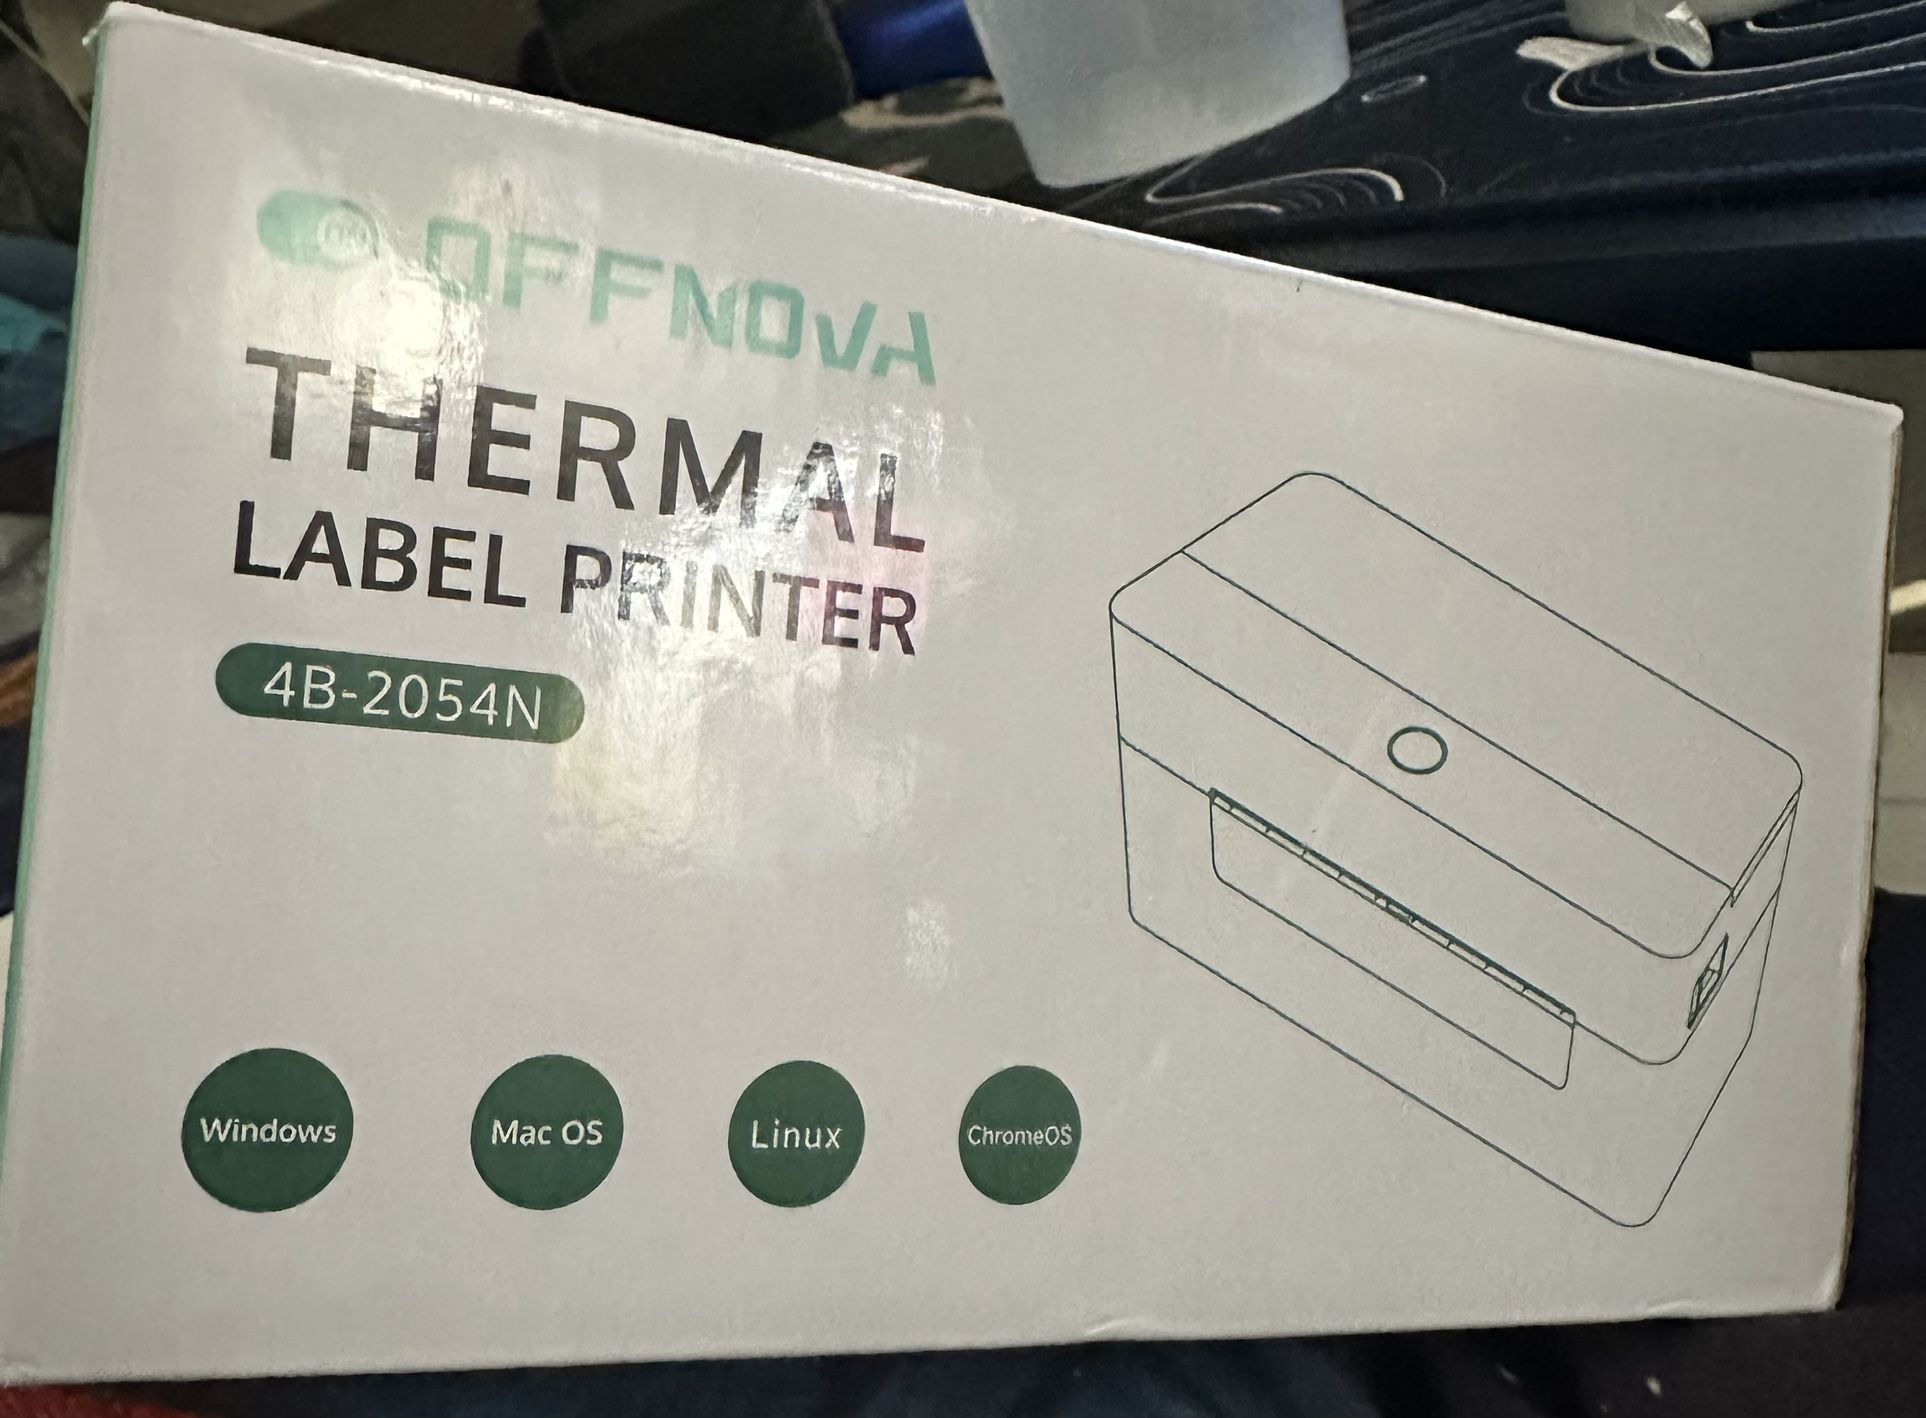 Auto-calibration Thermal Label Printer